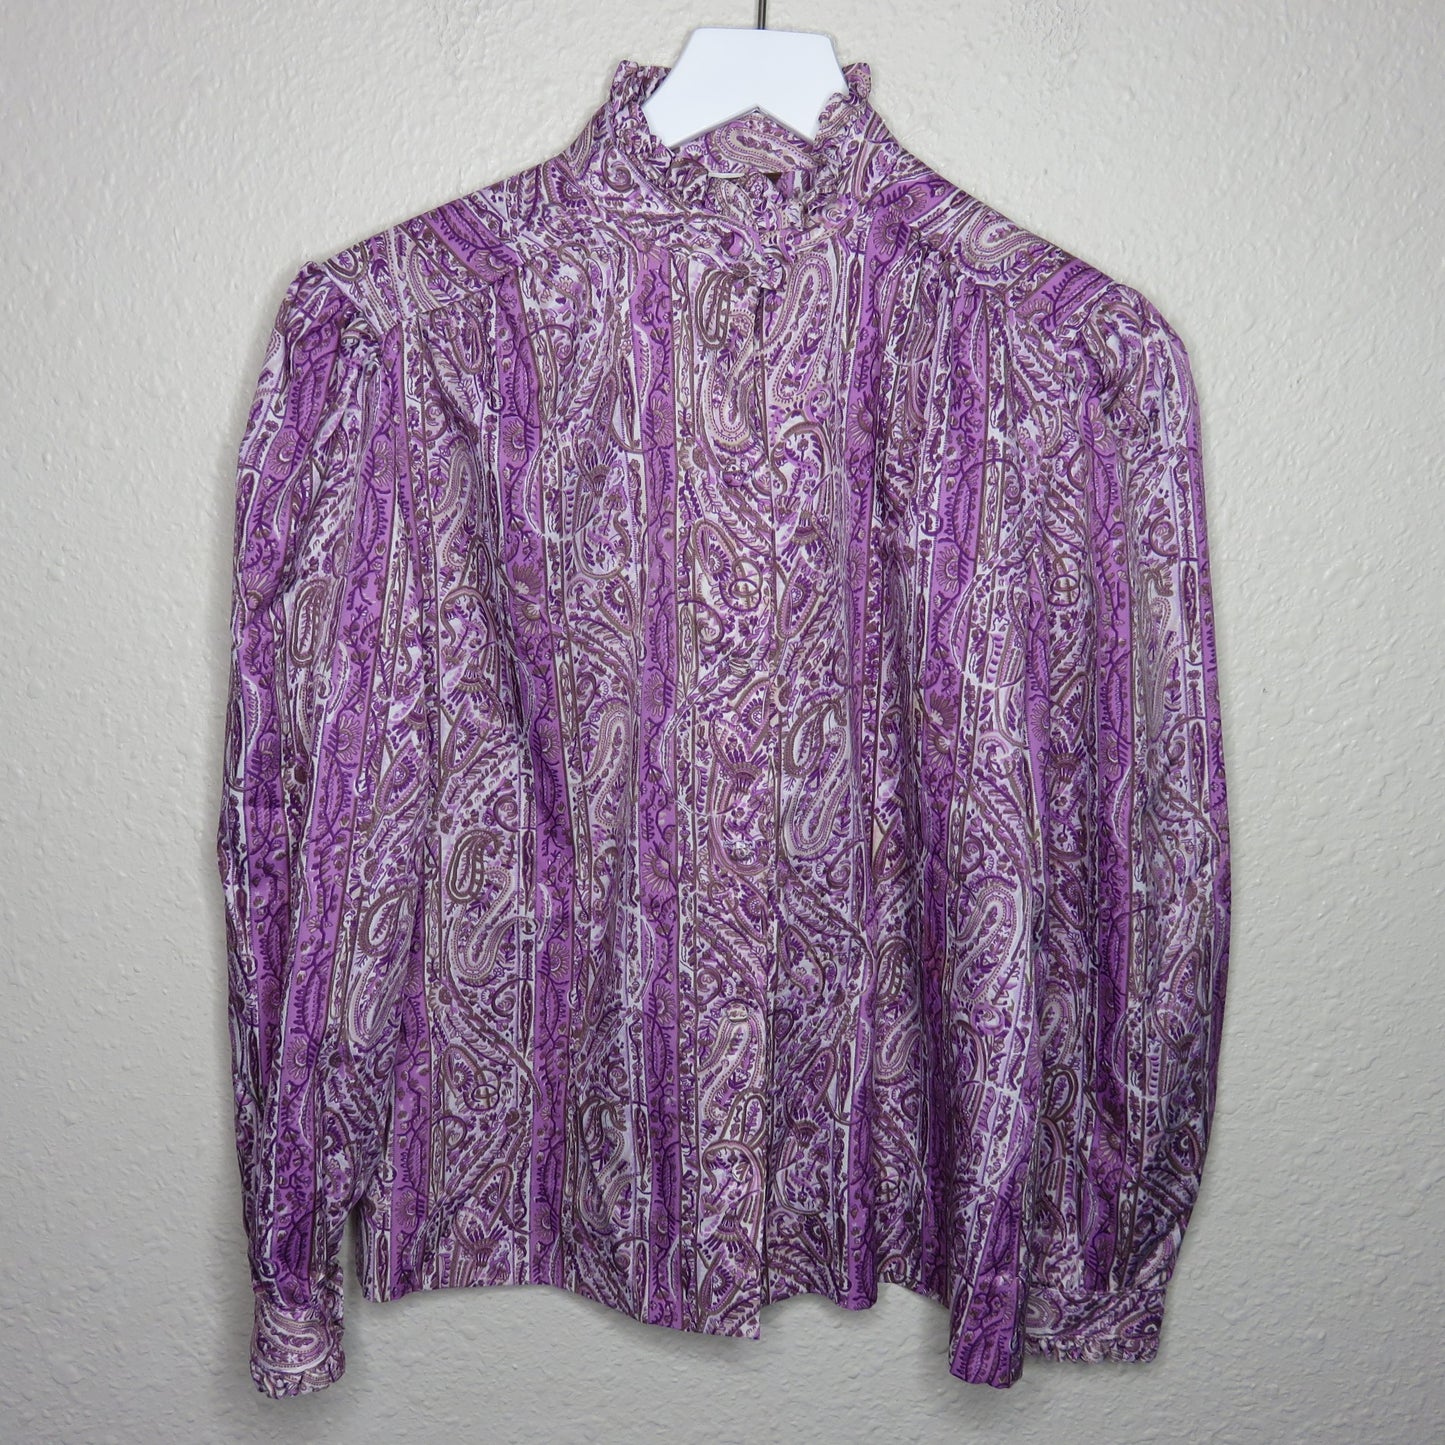 Vintage High Ruffle Neckline Purple Paisley Button Up Shirt - Women's M/L